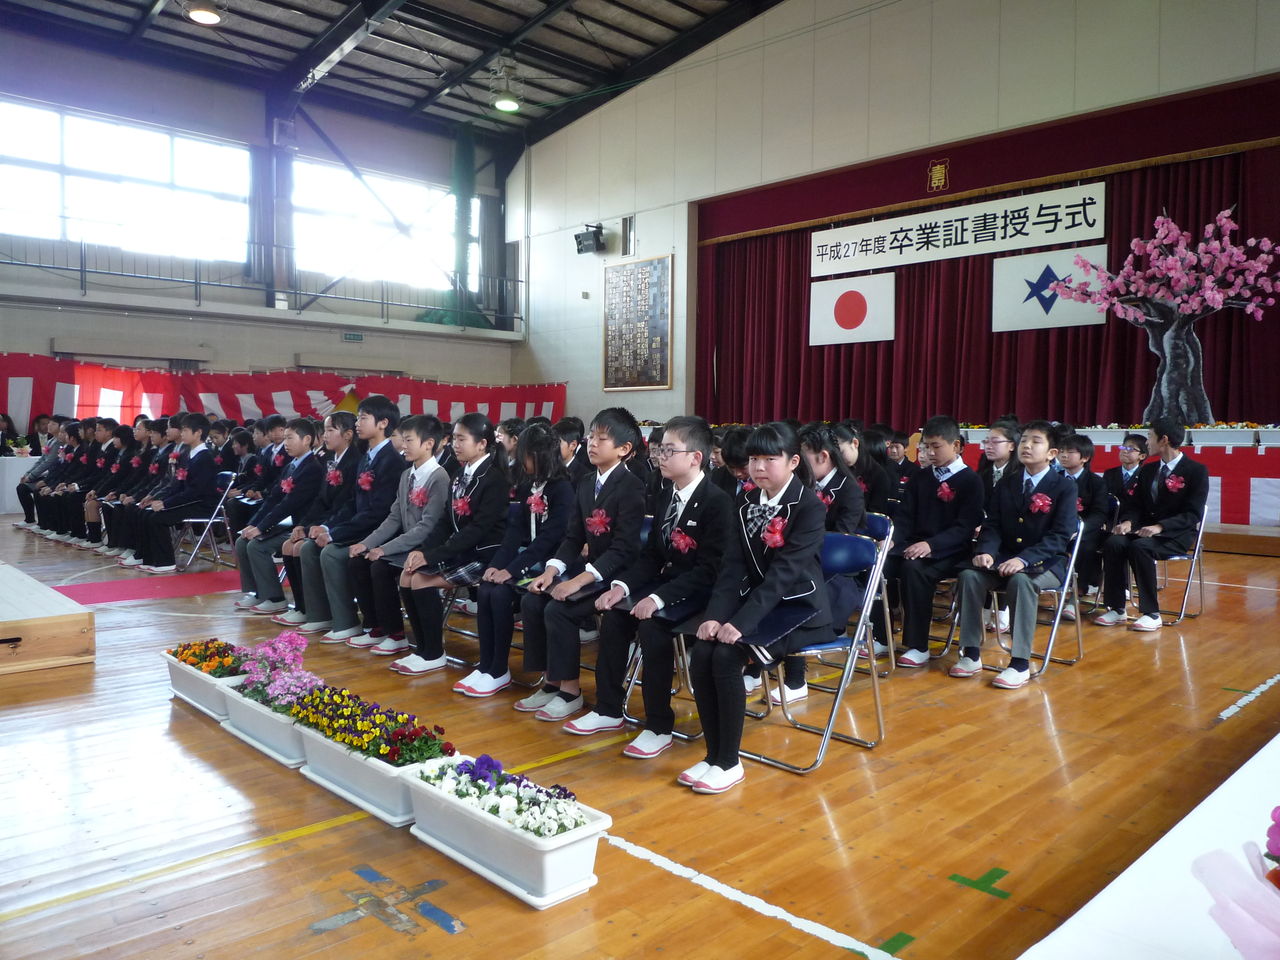 2016年小学校卒業式 